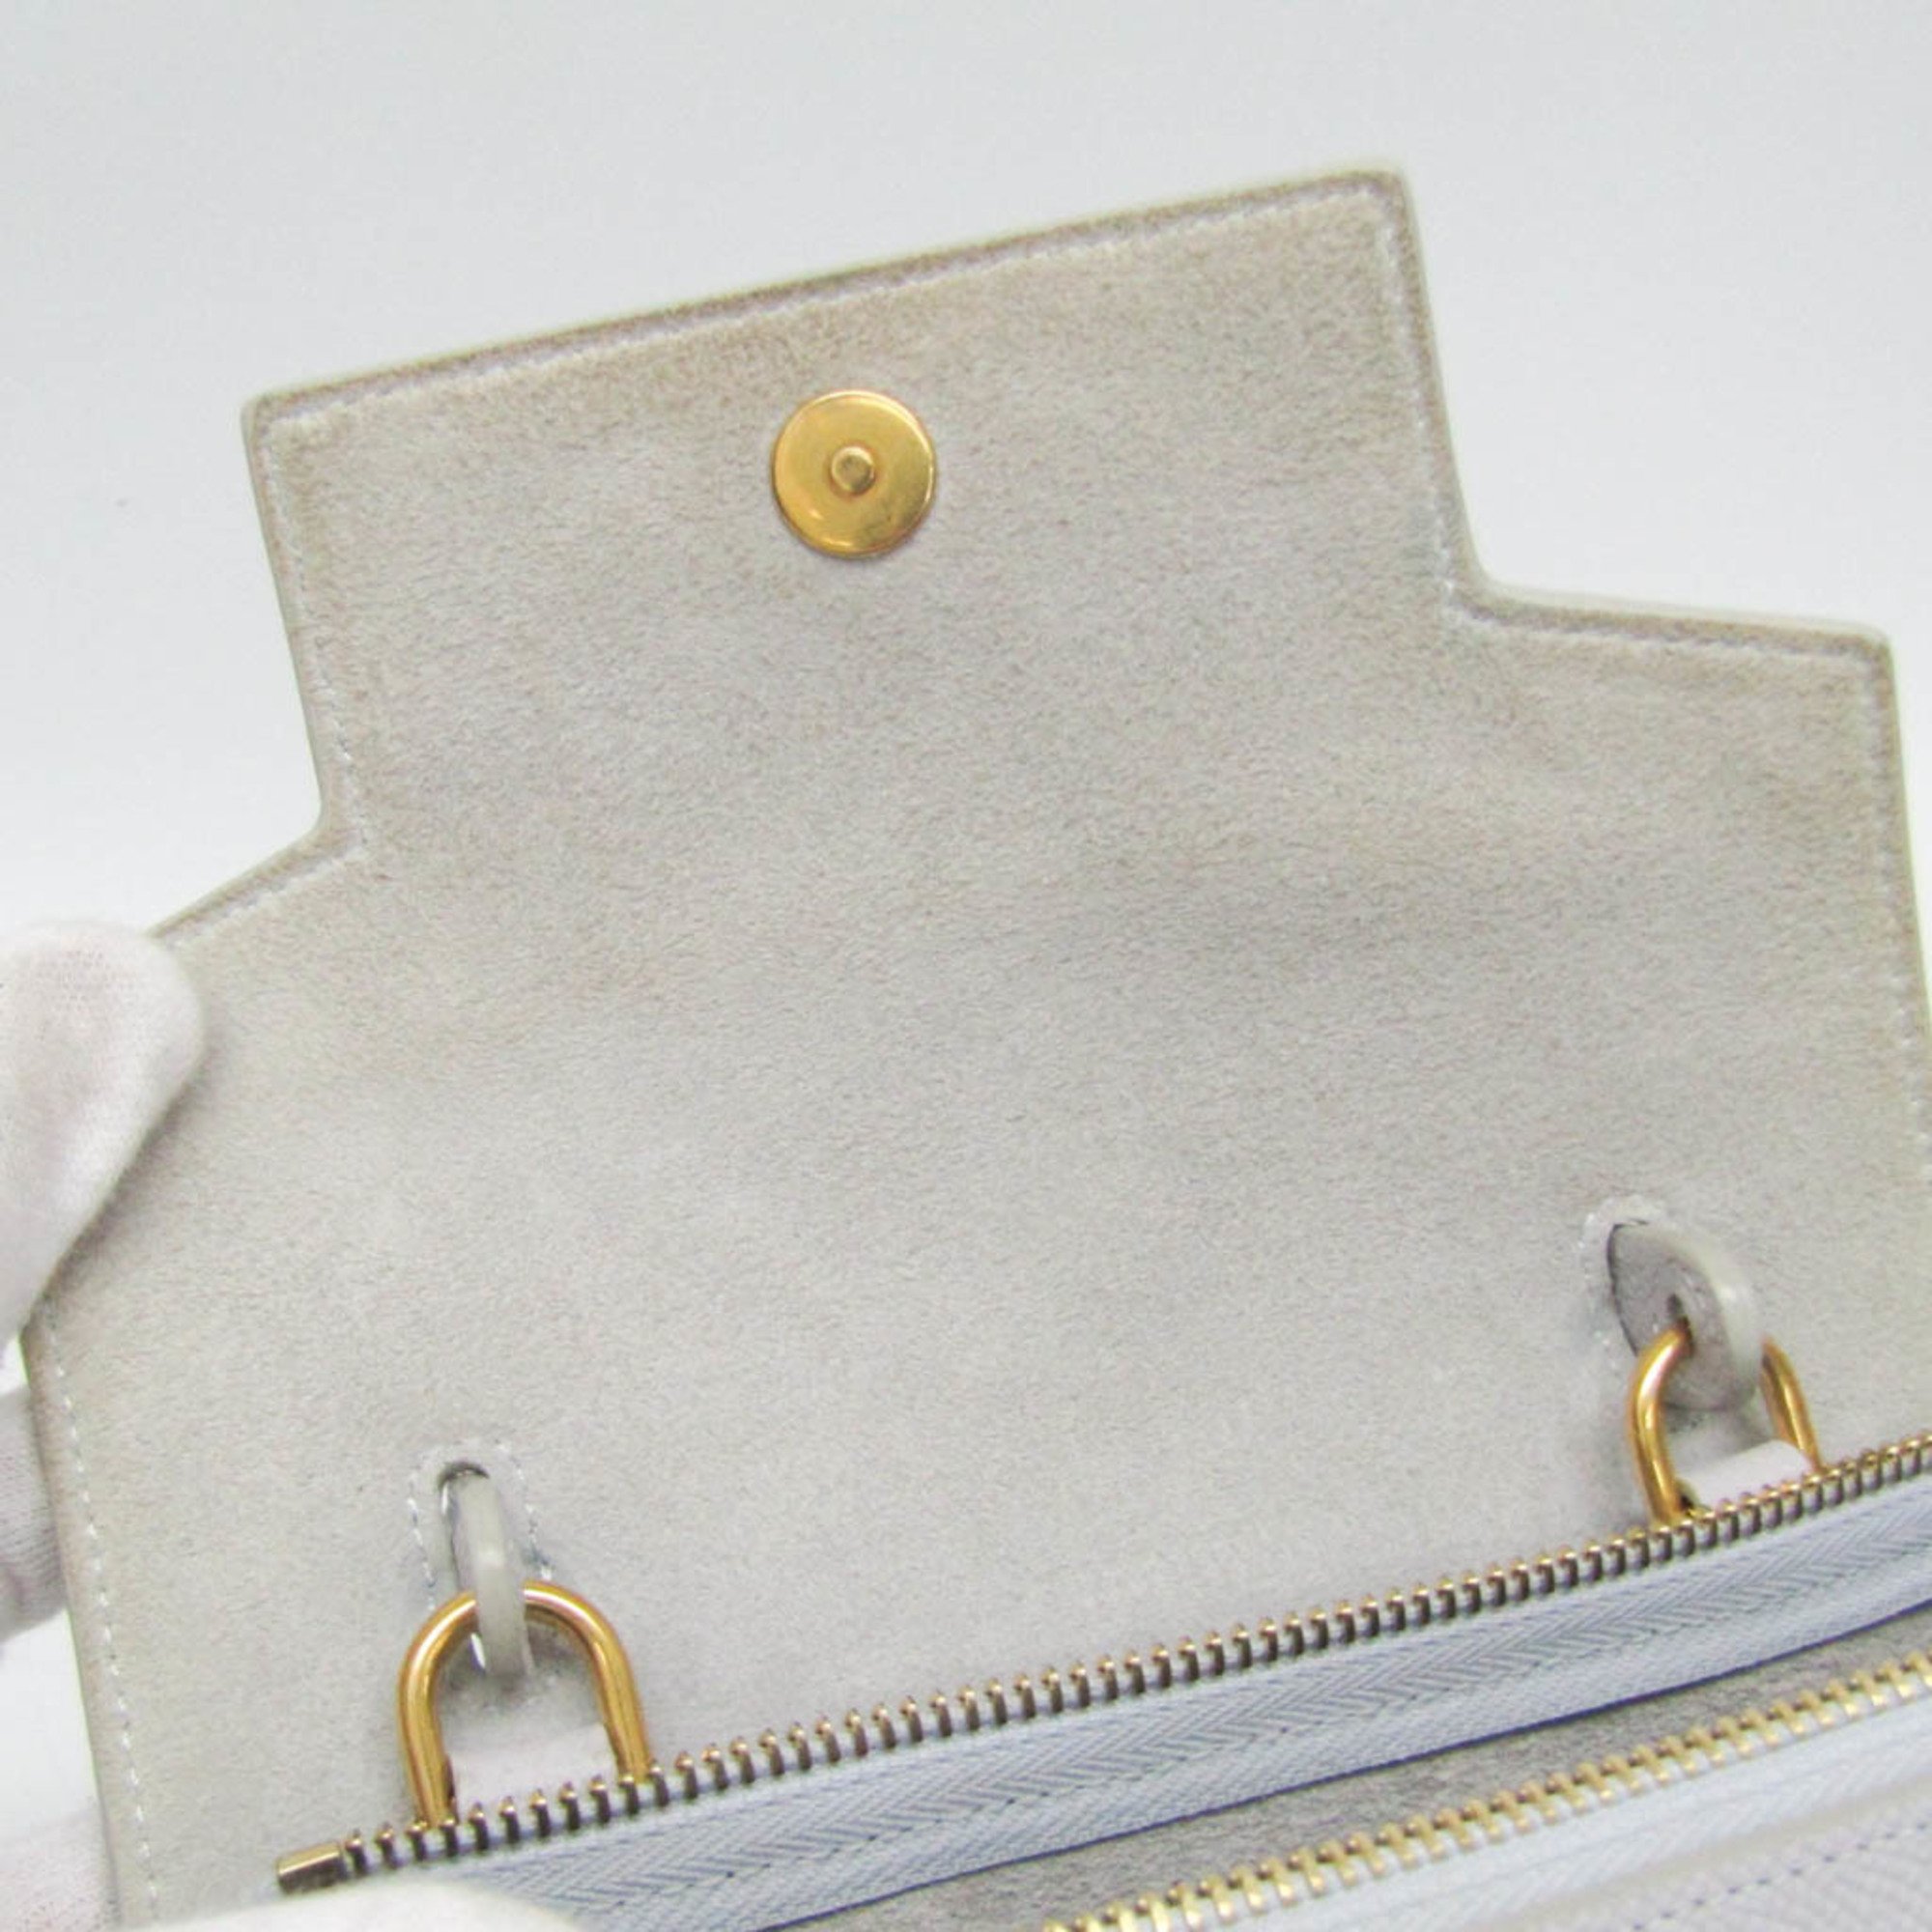 Celine NANO BELT BAG 189003ZVA Women's Leather Handbag,Shoulder Bag Light Blue Gray